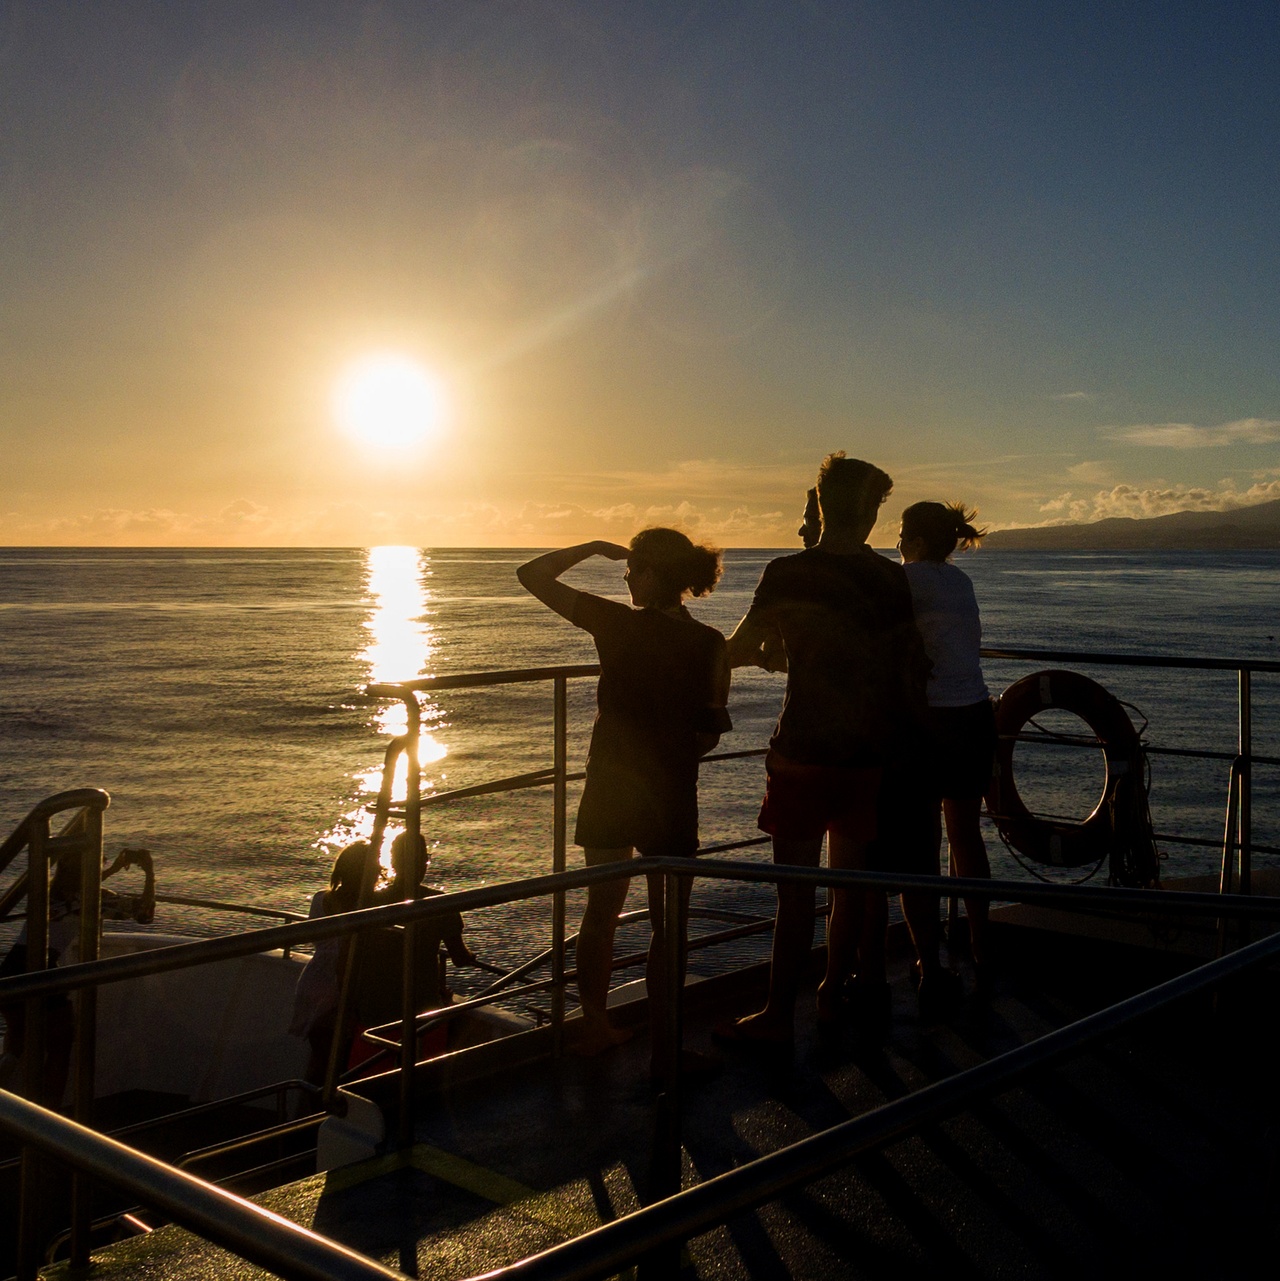 sunset
boat cruise